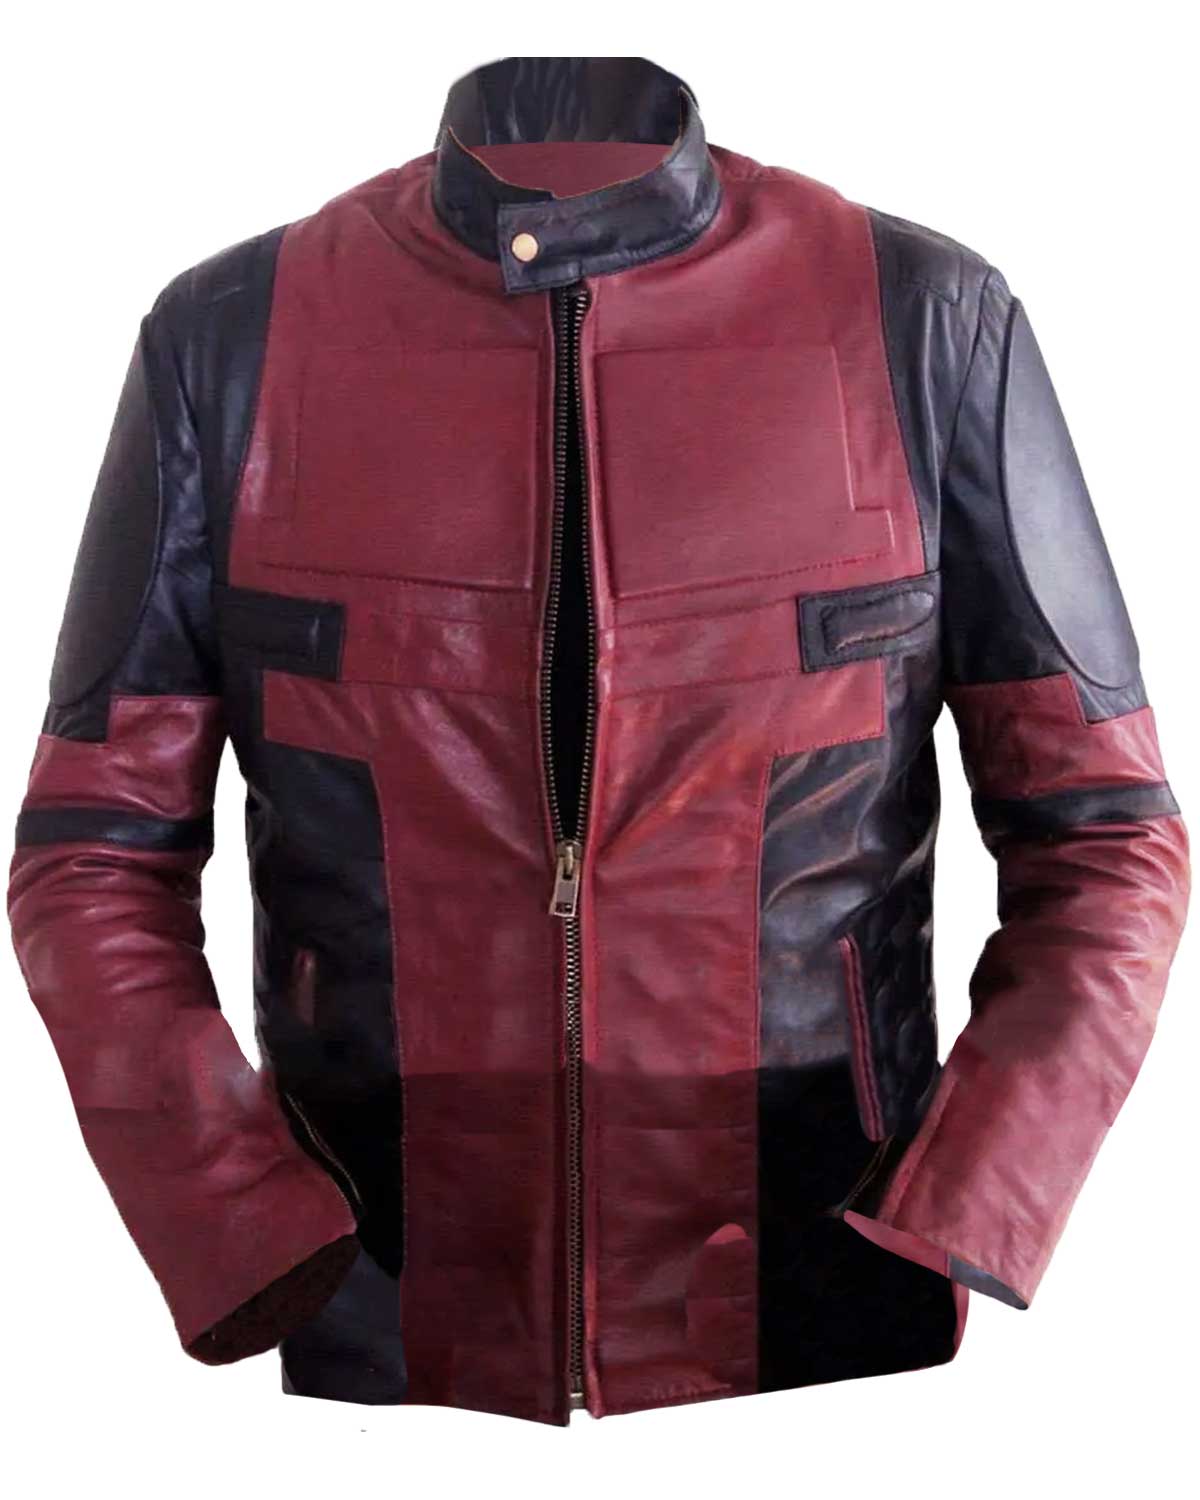 Elite Deadpool Leather Jacket